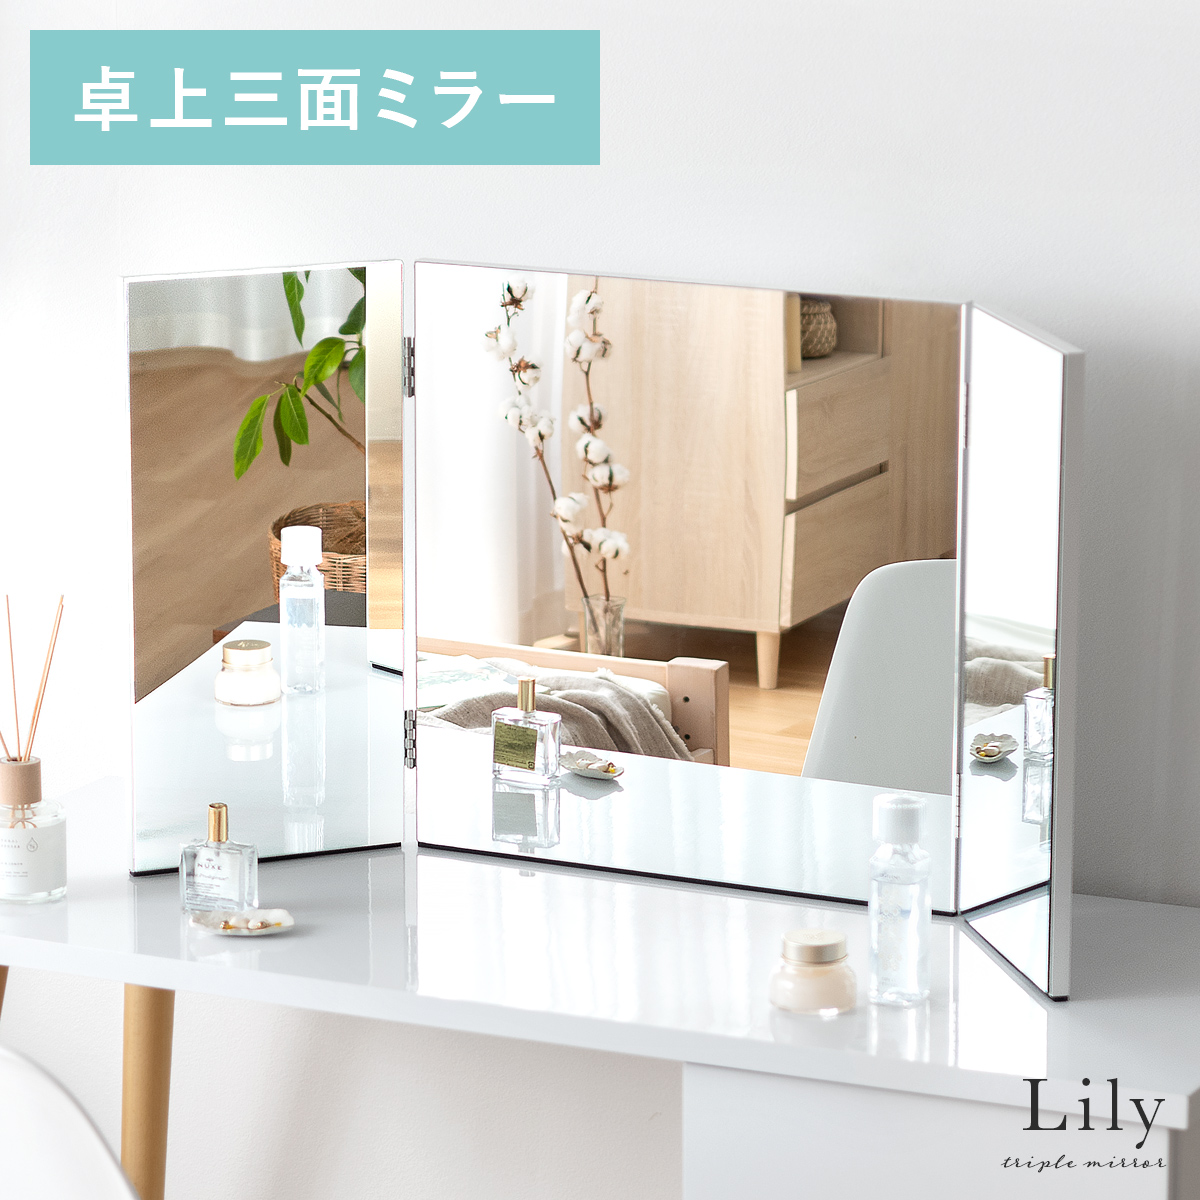 大型卓上三面鏡 Lily(リリー) 【公式】 エア・リゾーム インテリア・家具通販